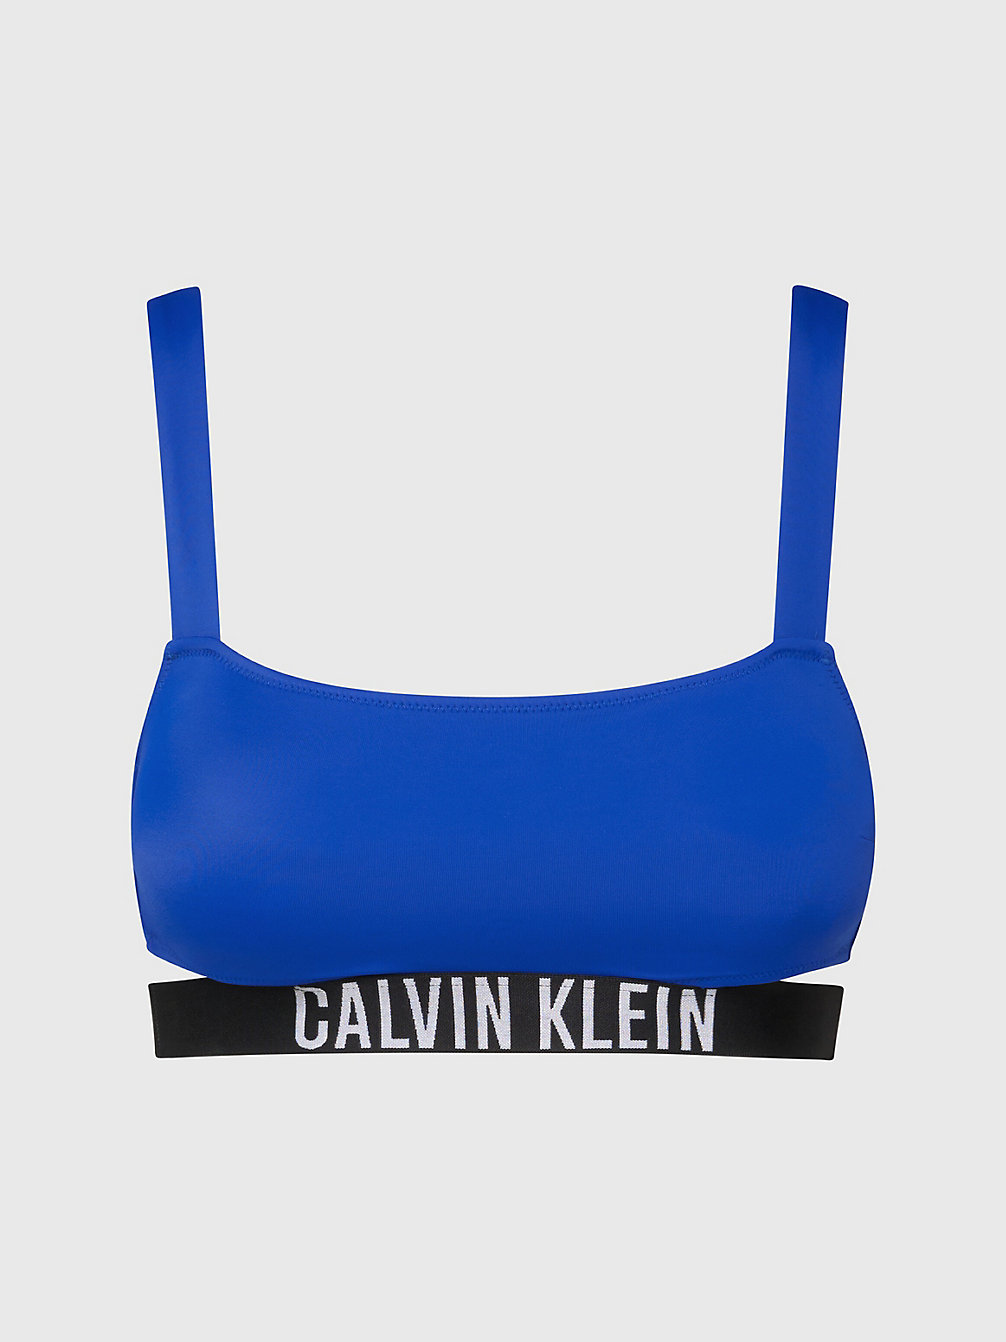 BISTRO BLUE Bralette Bikini Top - Intense Power undefined women Calvin Klein